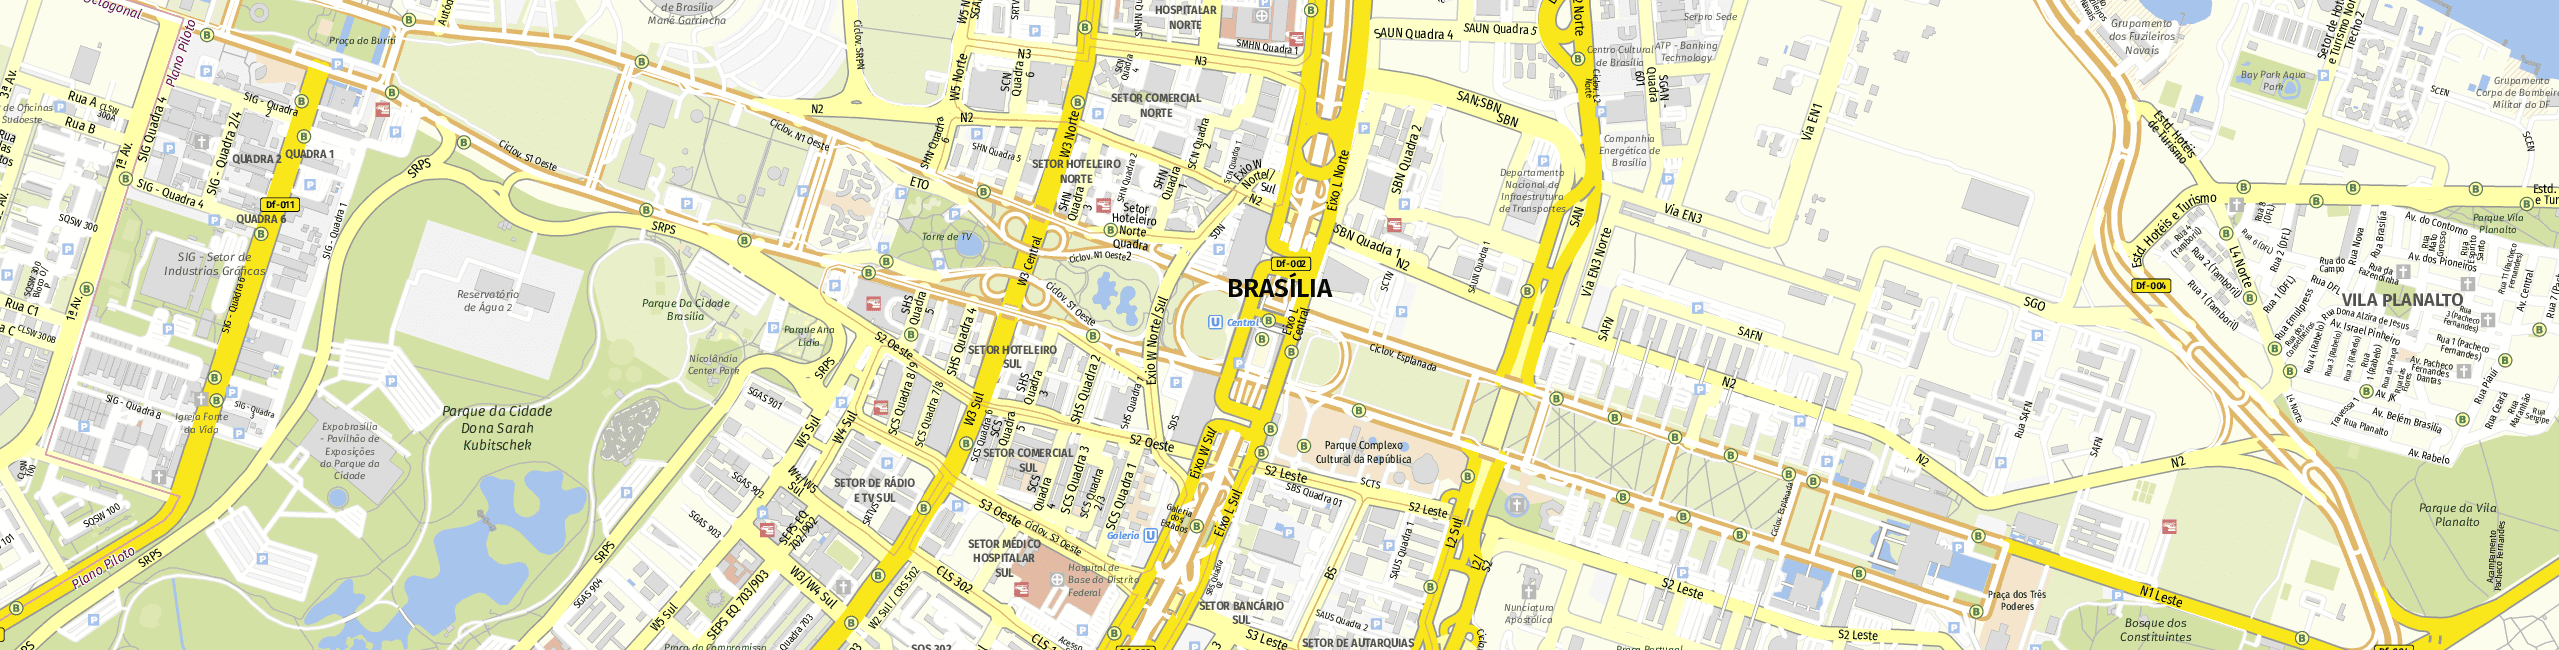 Stadtplan Brasilia zum Downloaden.